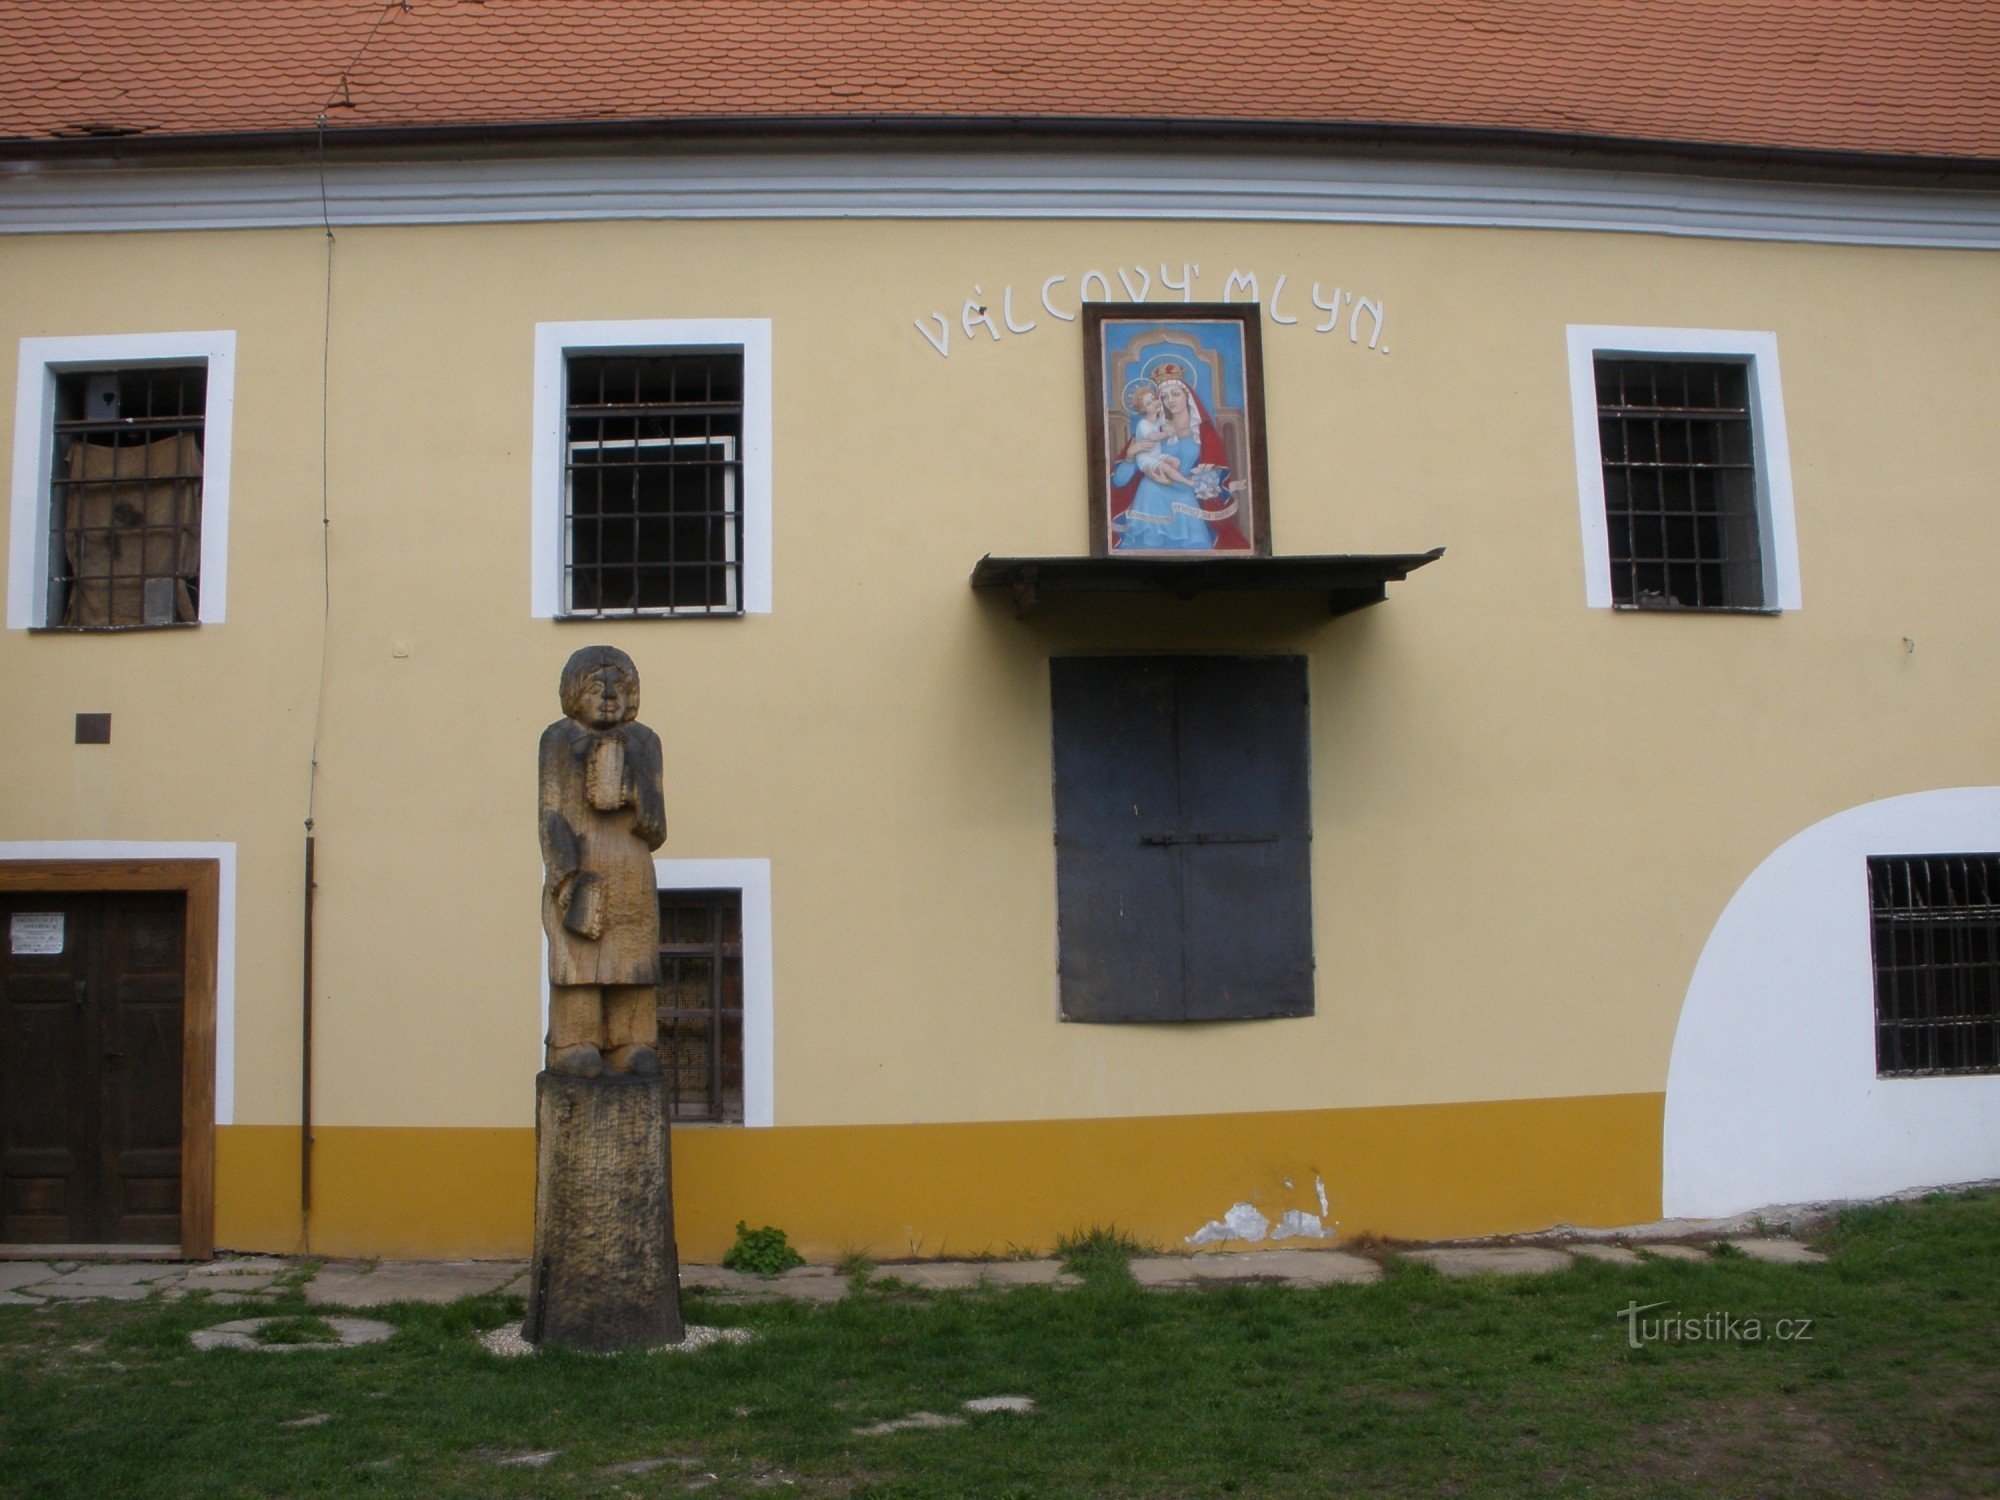 Moara-monument tehnic al lui Strážnice-Průžk